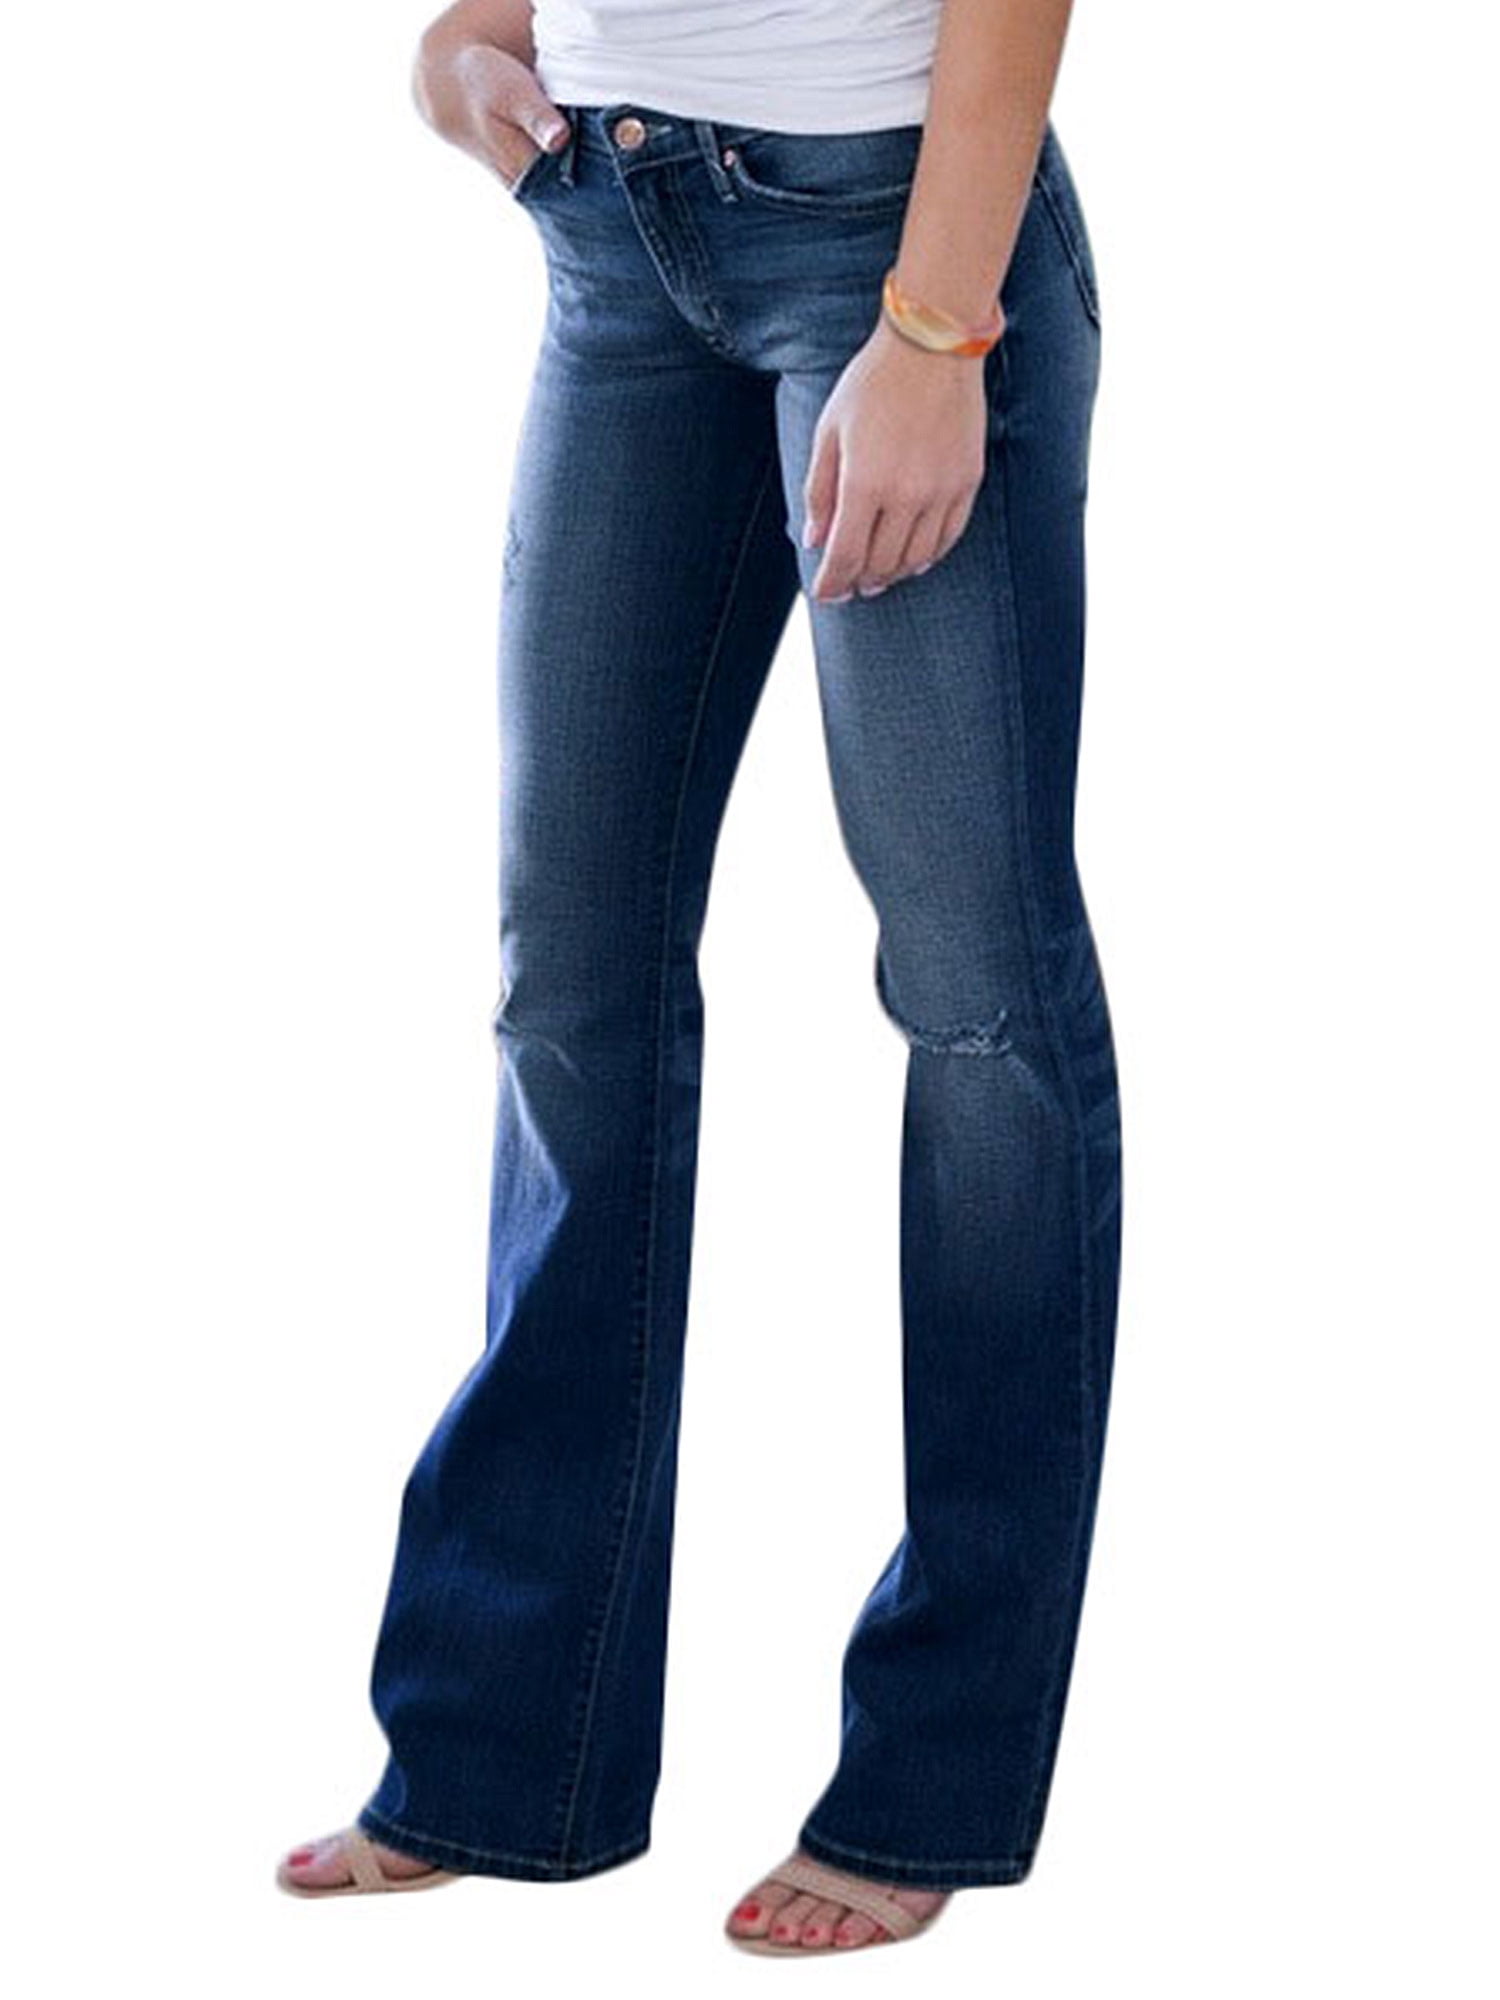 walmart jeans pants